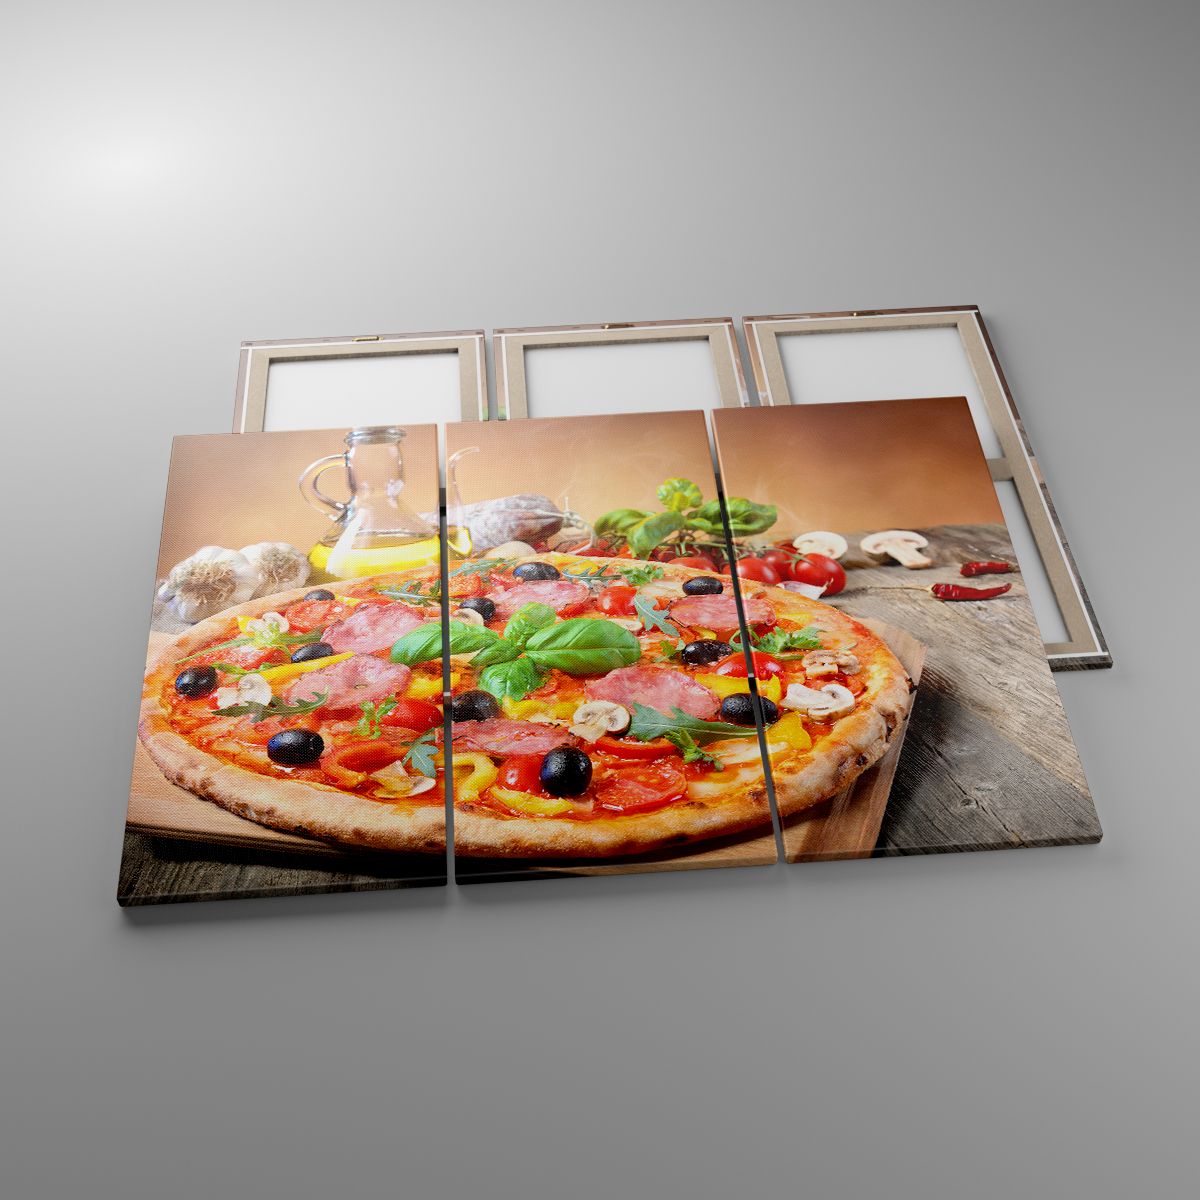 Impression La Gastronomie, Impression Pizza, Impression Italie, Impression Cuisine, Impression Pétrole